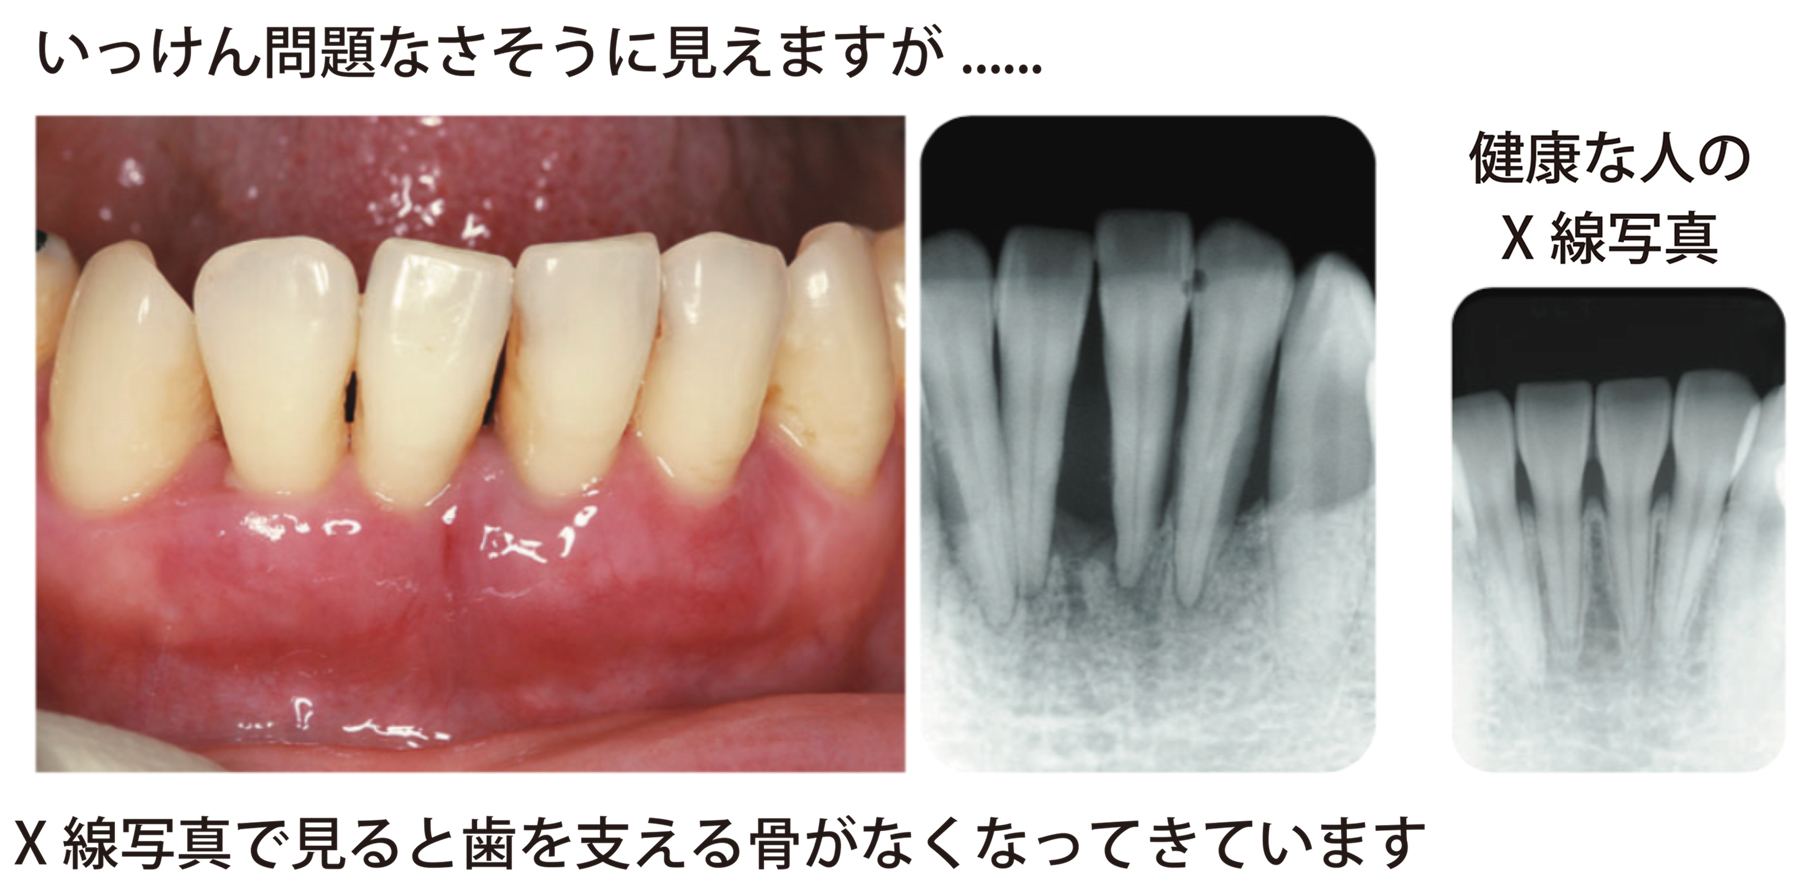 いっけん問題なさそうに見える歯でも、X線写真で見ると歯を支える骨がなくなってきています。